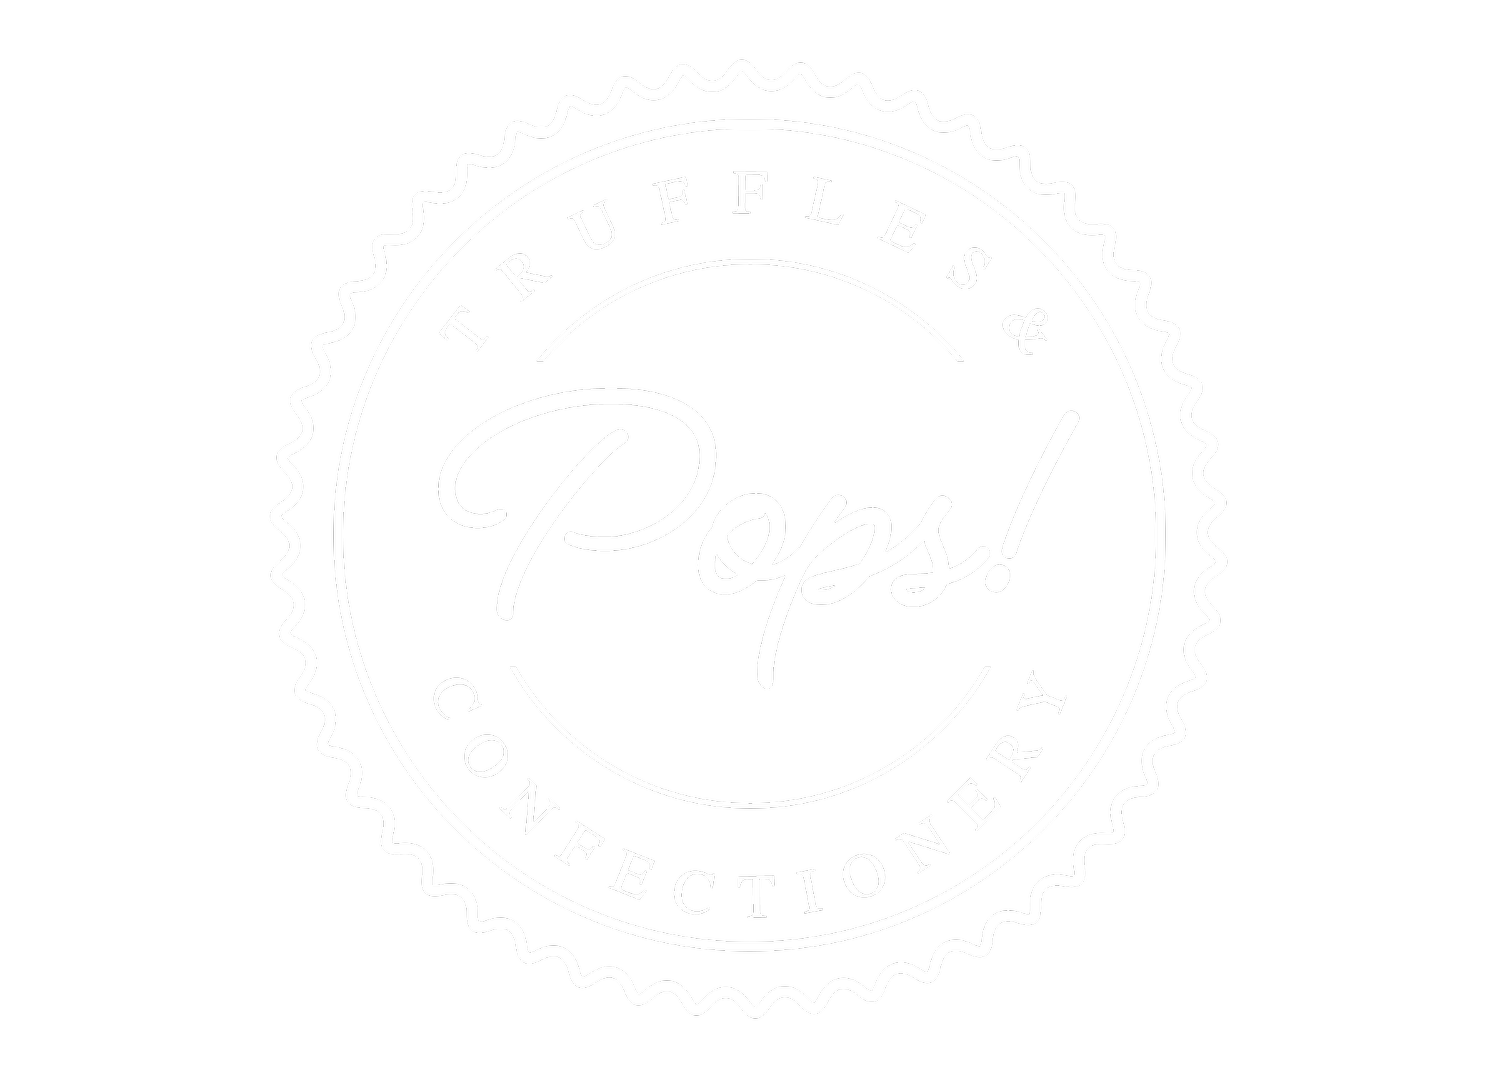 POPS! Truffles